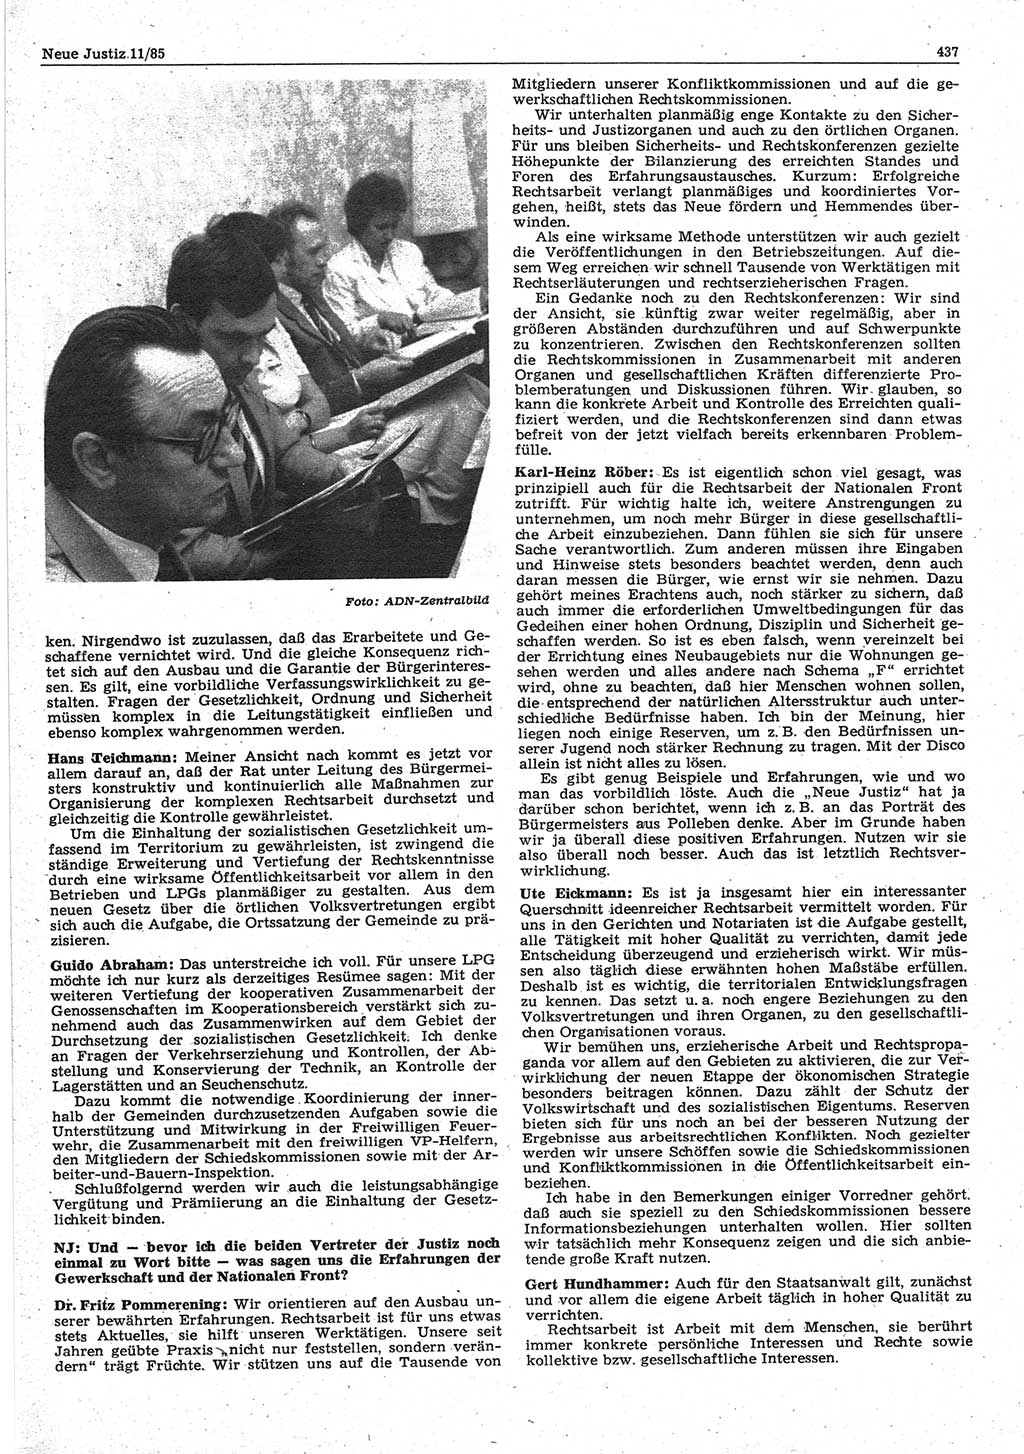 Neue Justiz (NJ), Zeitschrift für sozialistisches Recht und Gesetzlichkeit [Deutsche Demokratische Republik (DDR)], 39. Jahrgang 1985, Seite 437 (NJ DDR 1985, S. 437)